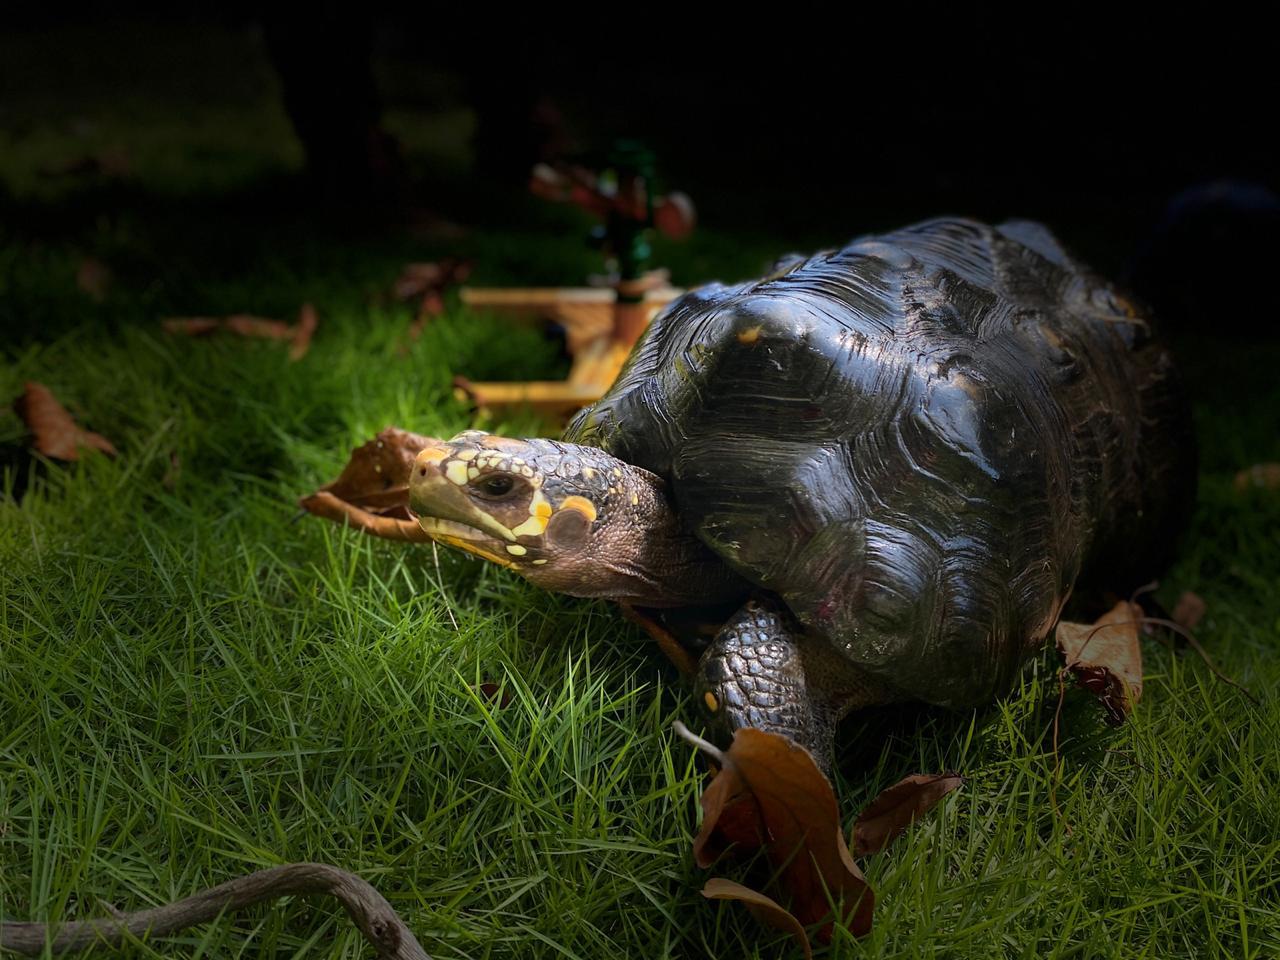 La tortuga regresó de nuevo a su hábitat, otra de las especies liberadas en la Ruta de la Libertad. Foto: Comunicaciones Secretaría de Ambiente.